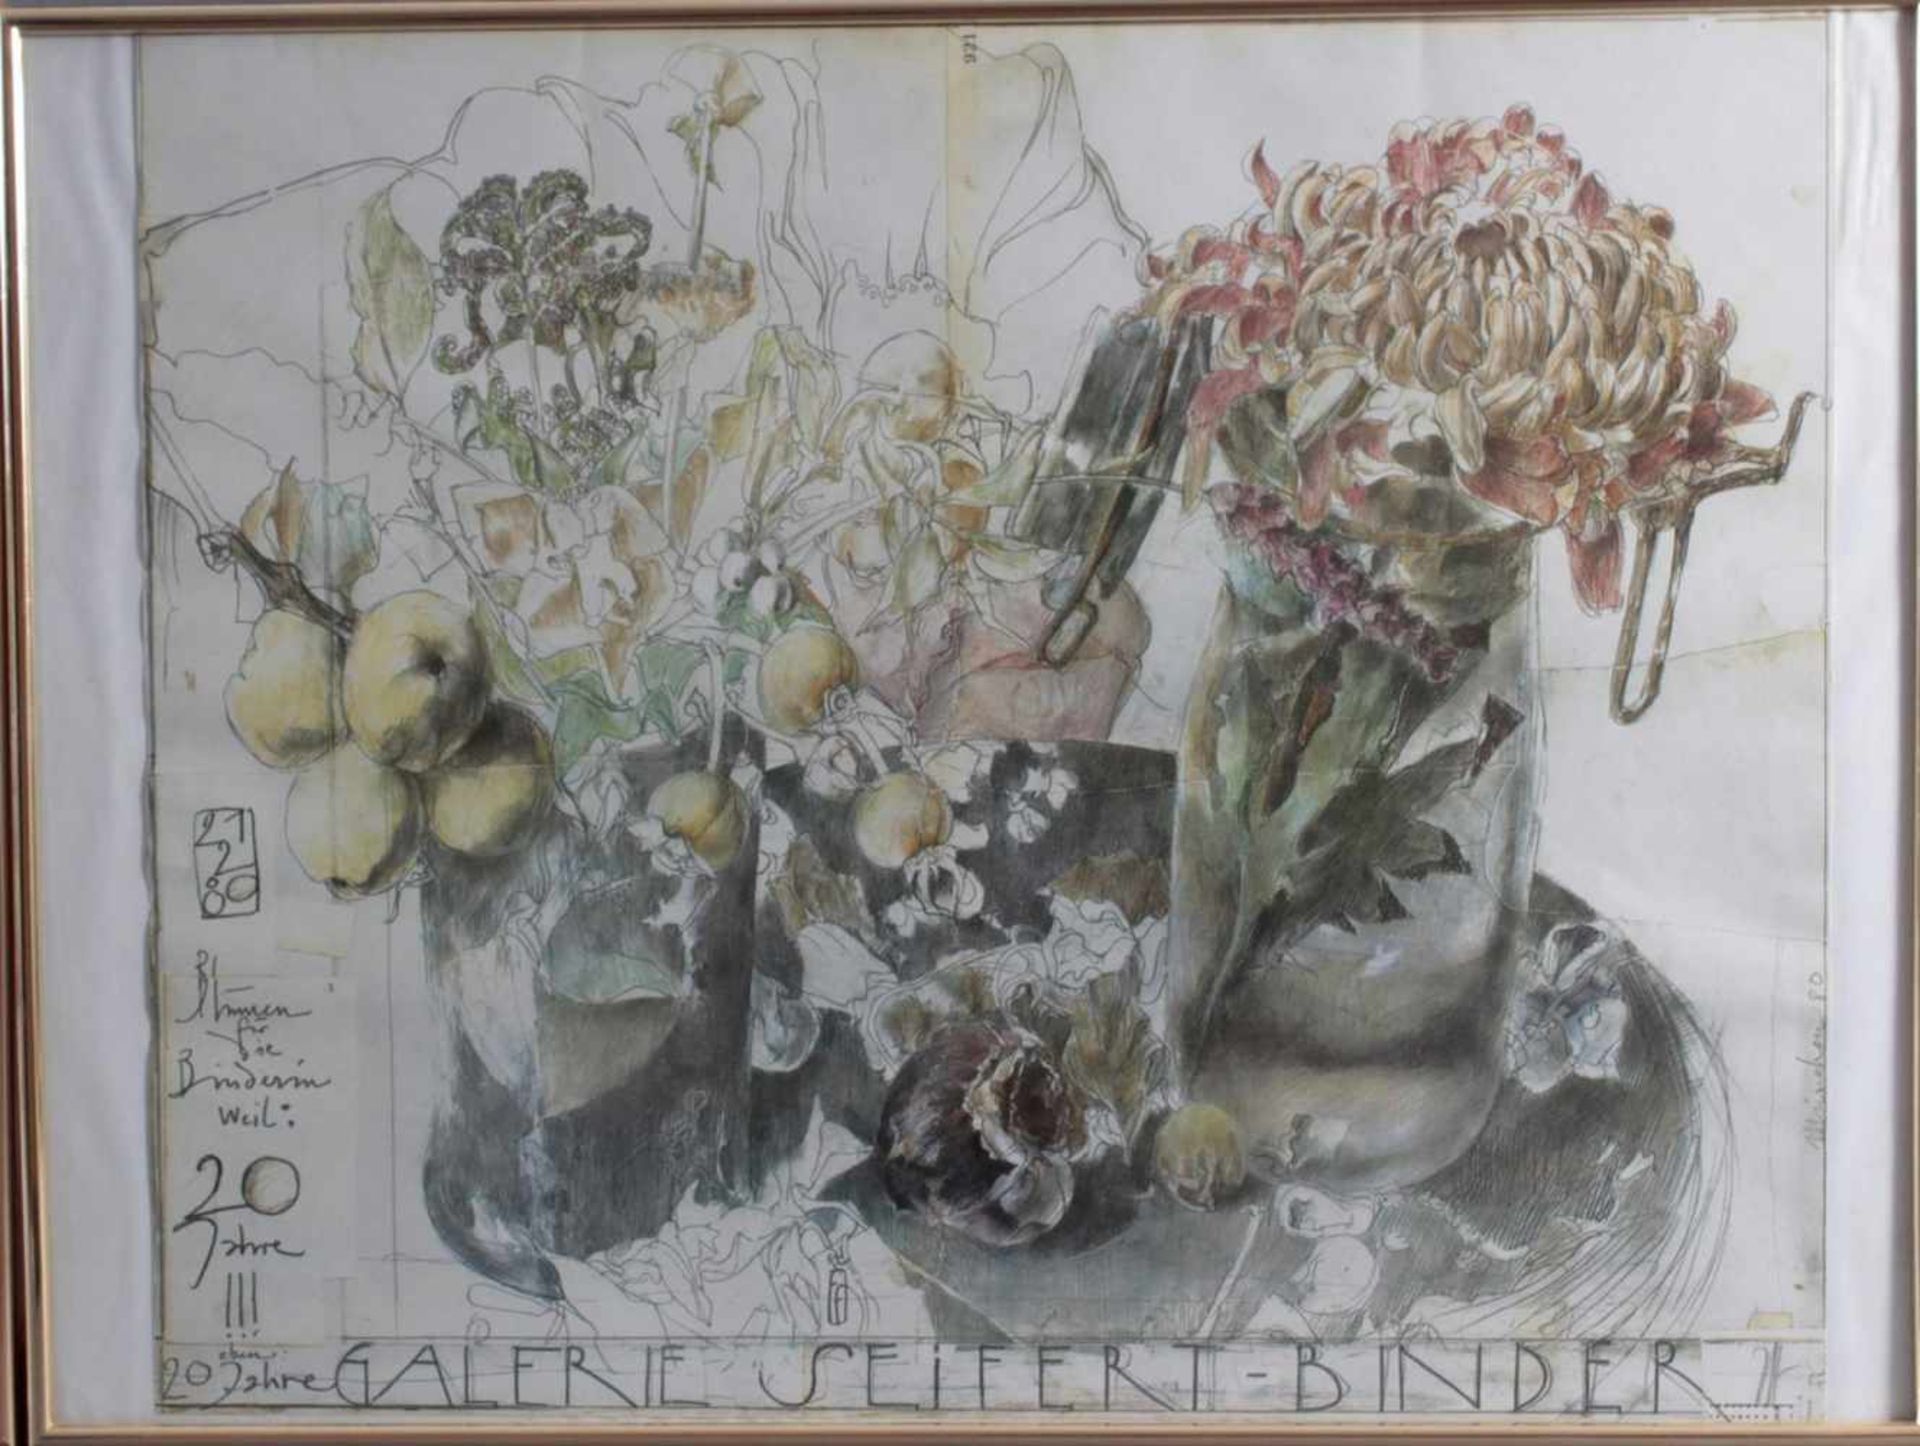 Horst Janssen (1929 - 1995)2 Kunstdrucke, "Galerie Seifert-Binder", ca. 70 x 60 cm. " - Bild 4 aus 5